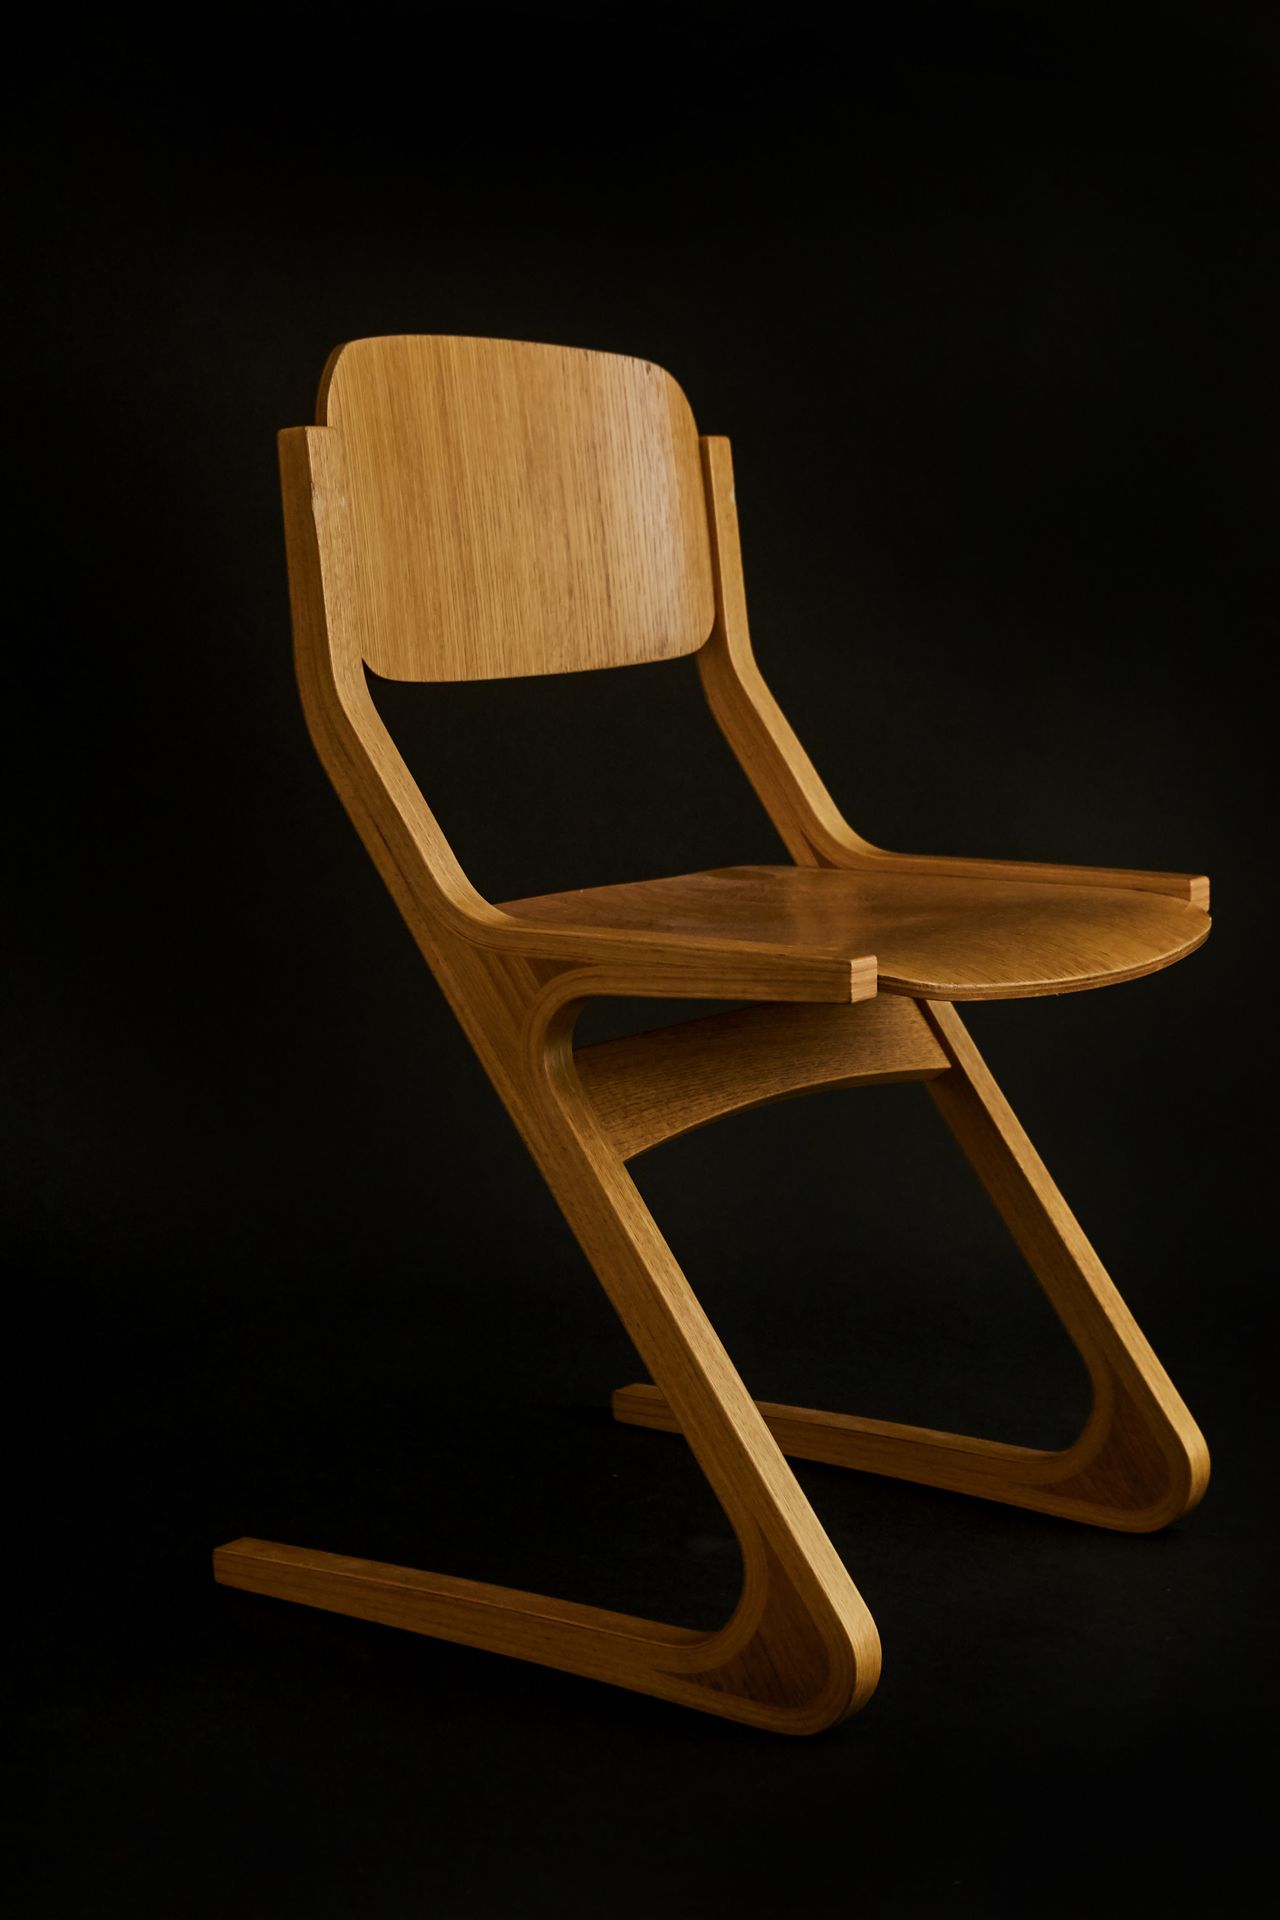 ISAMU KENMOCHI Z椅---椅子
木头
1960
高77宽48深50厘米